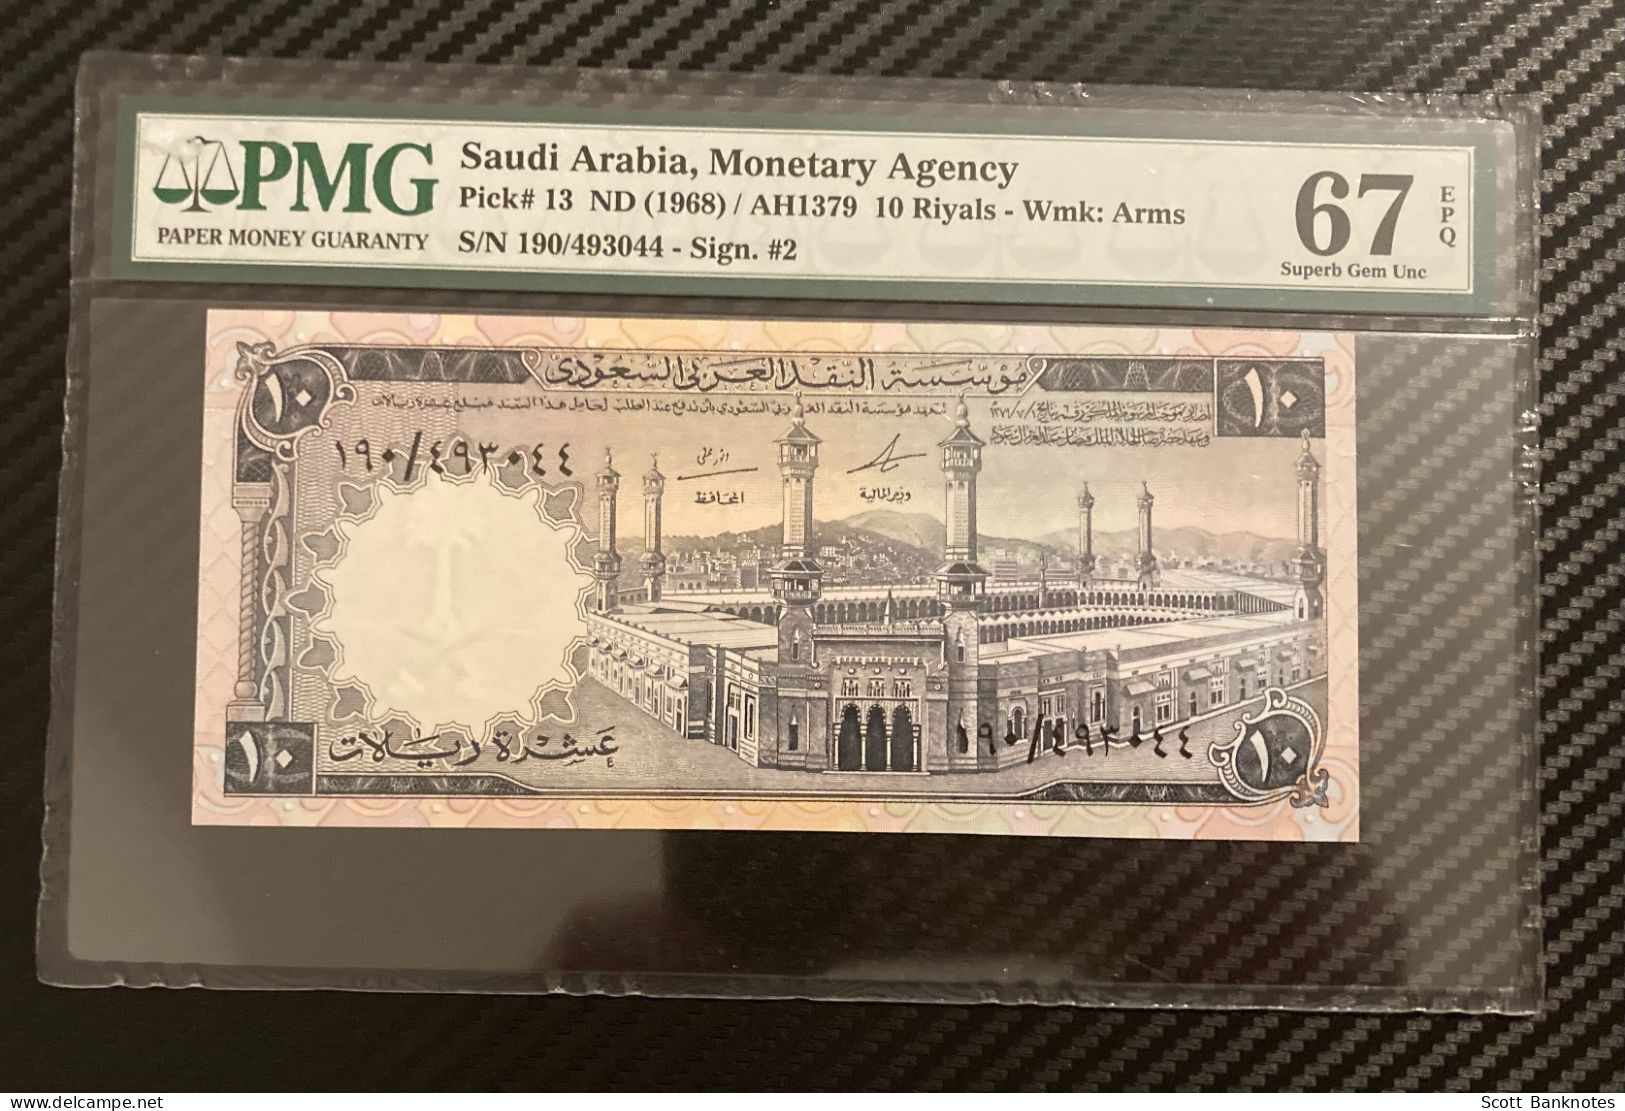 1968, PMG 67 Superb Gem Unc, Saudi Arabia 10 Riyals, Wmk Arms, Pick 13, SN 190 493044 - Saudi-Arabien